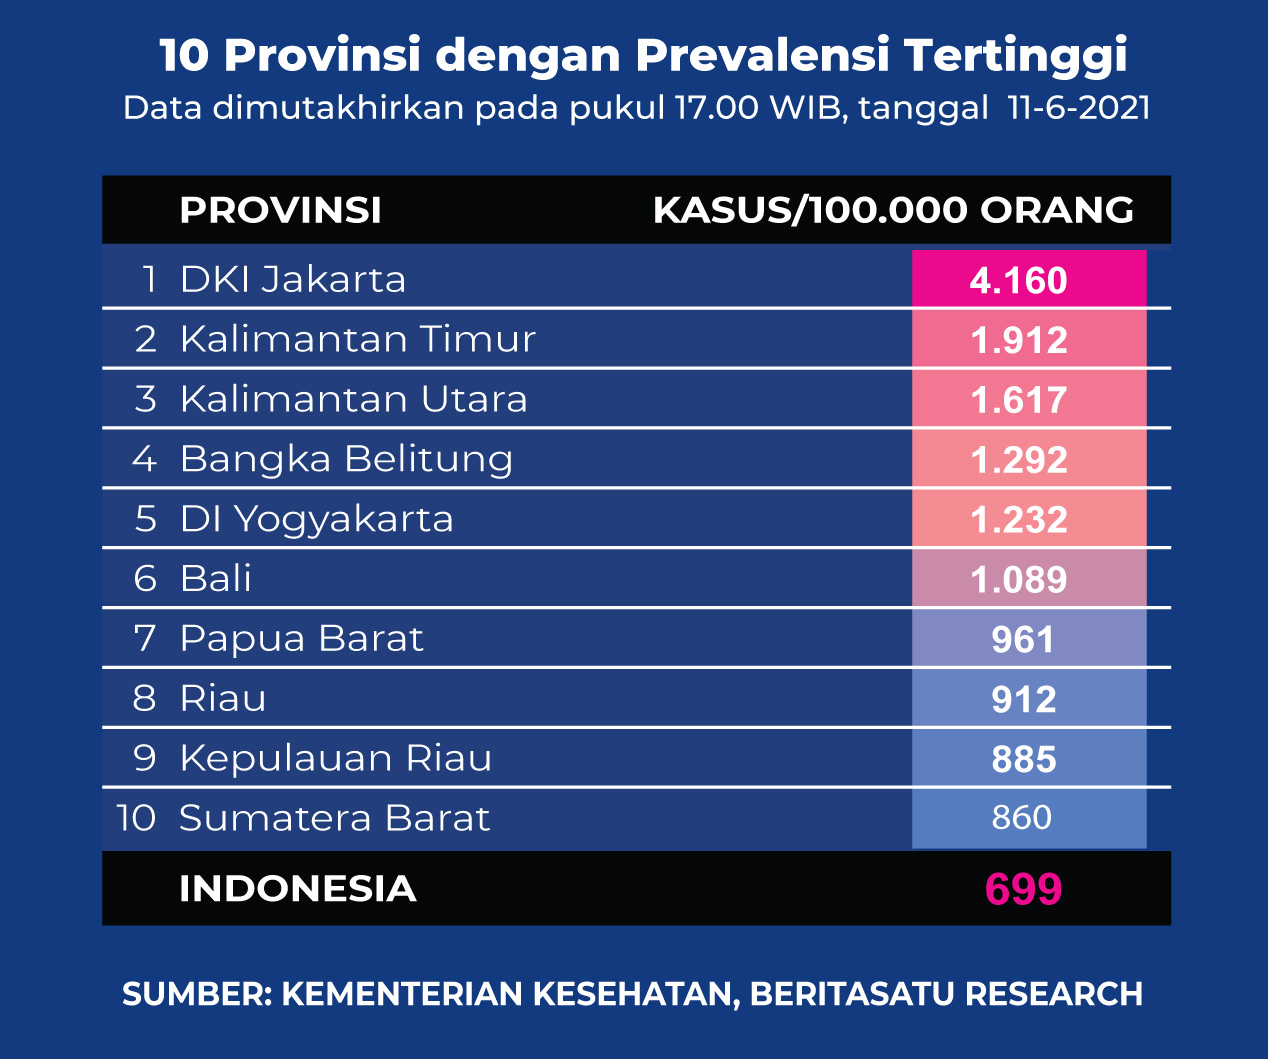 Data 10 Provinsi dengan Prevalensi Tertinggi Covid-19 pada 11 Juni 2021